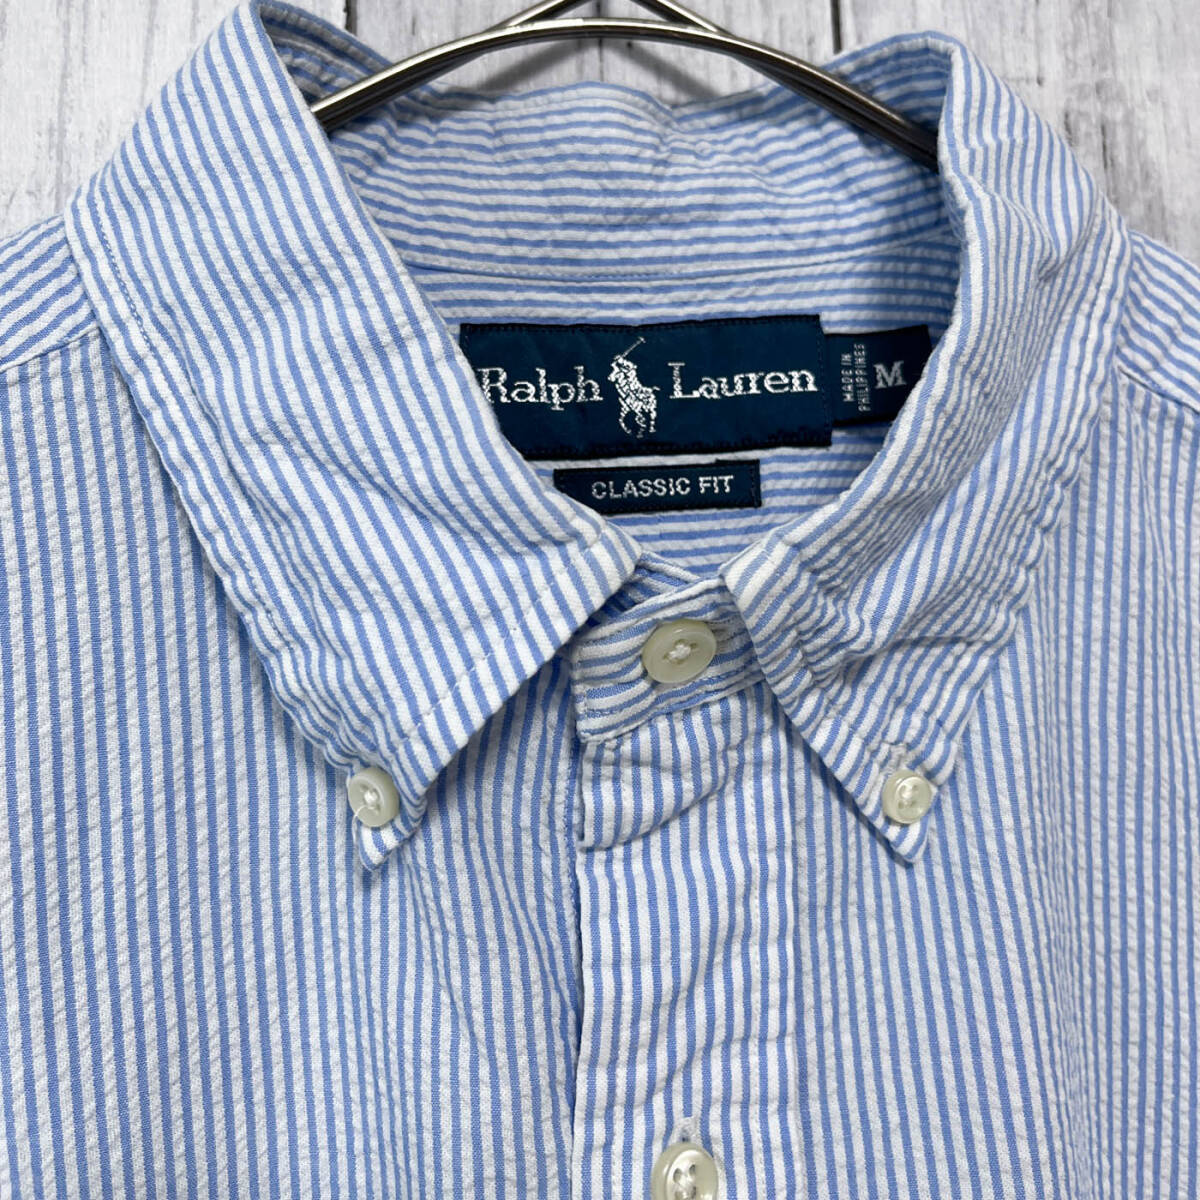 ラルフローレン Ralph Lauren CLASSIC FIT サッカー生地 ストライプシャツ 半袖シャツ メンズ ワンポイント コットン100% Mサイズ 5‐722